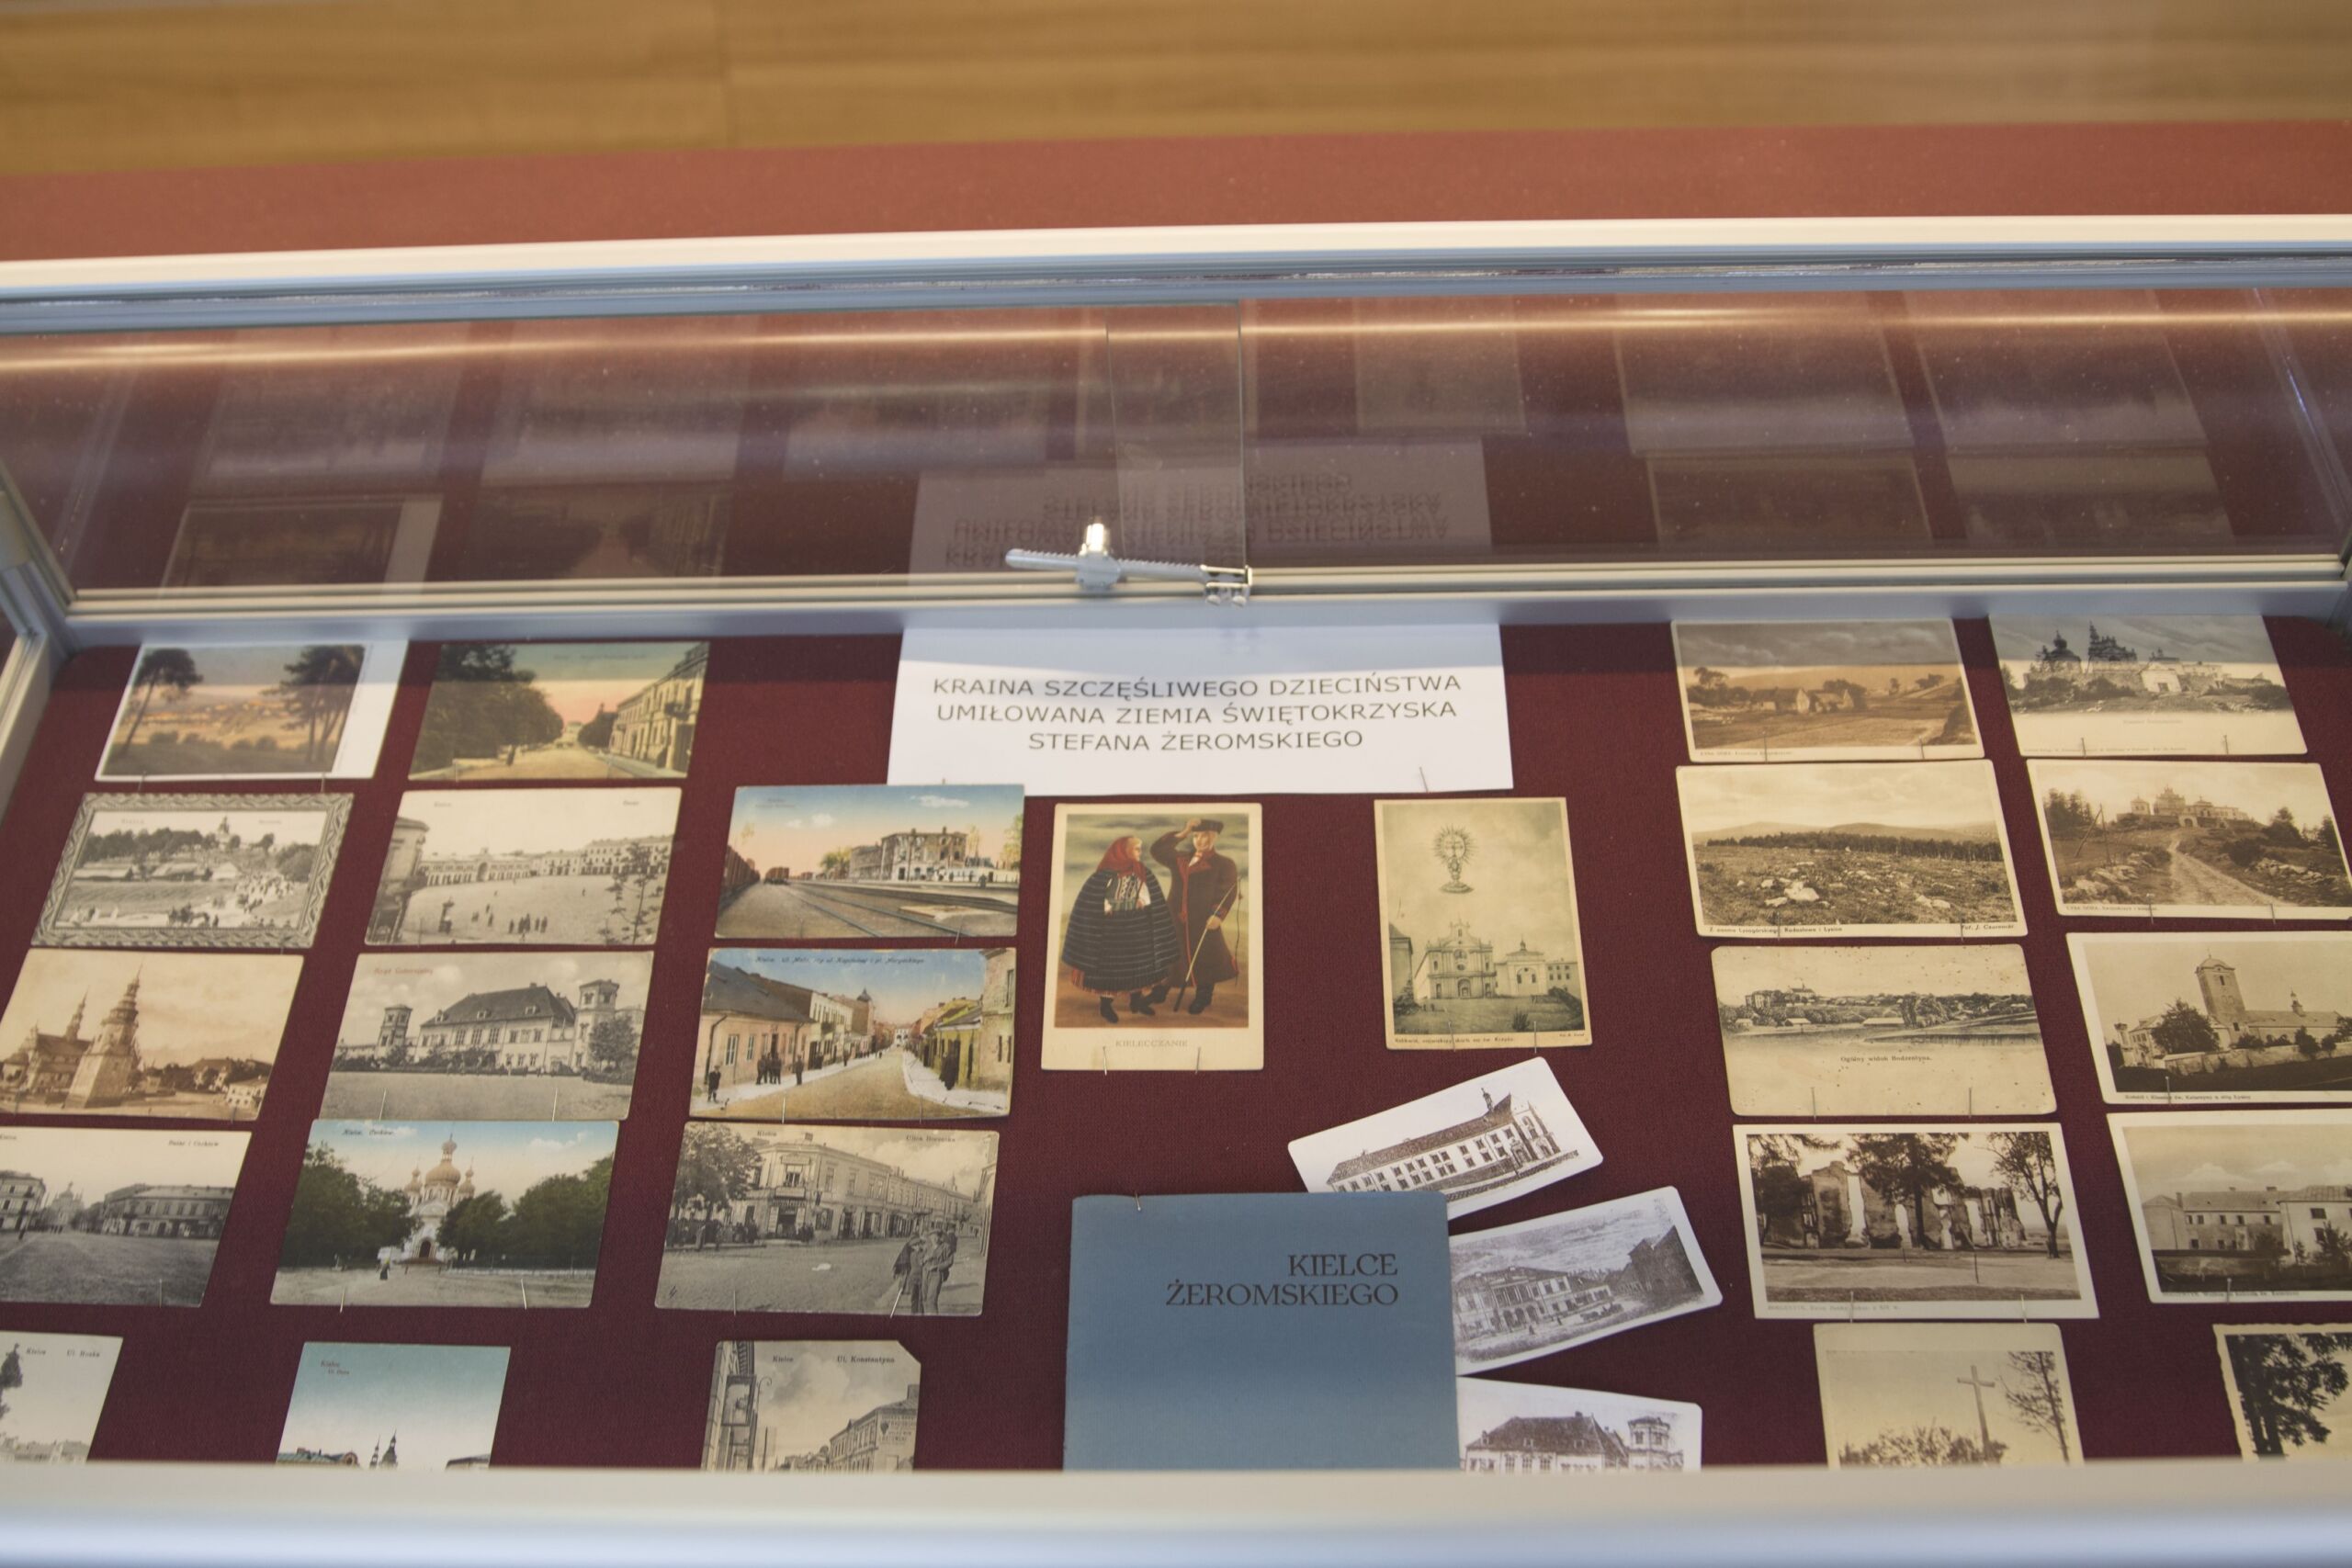 Kielce Żeromskiego prezentowane na kartach pocztowych w gablocie